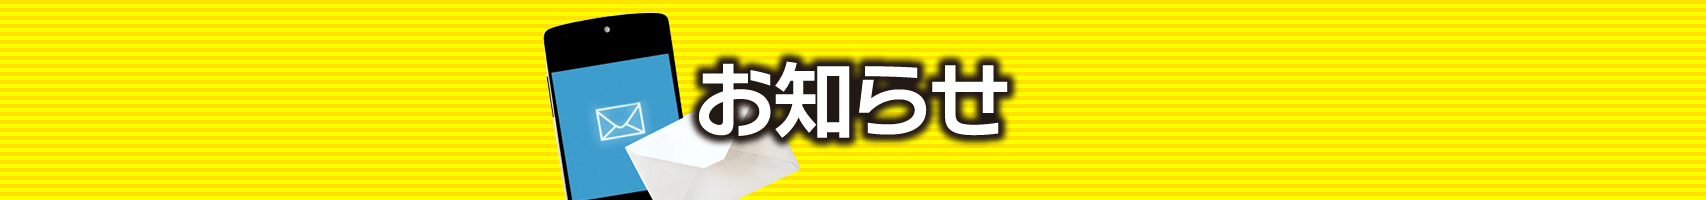 亀谷競馬サロン 本日19時時点の更新コンテンツ/7月9日(金)